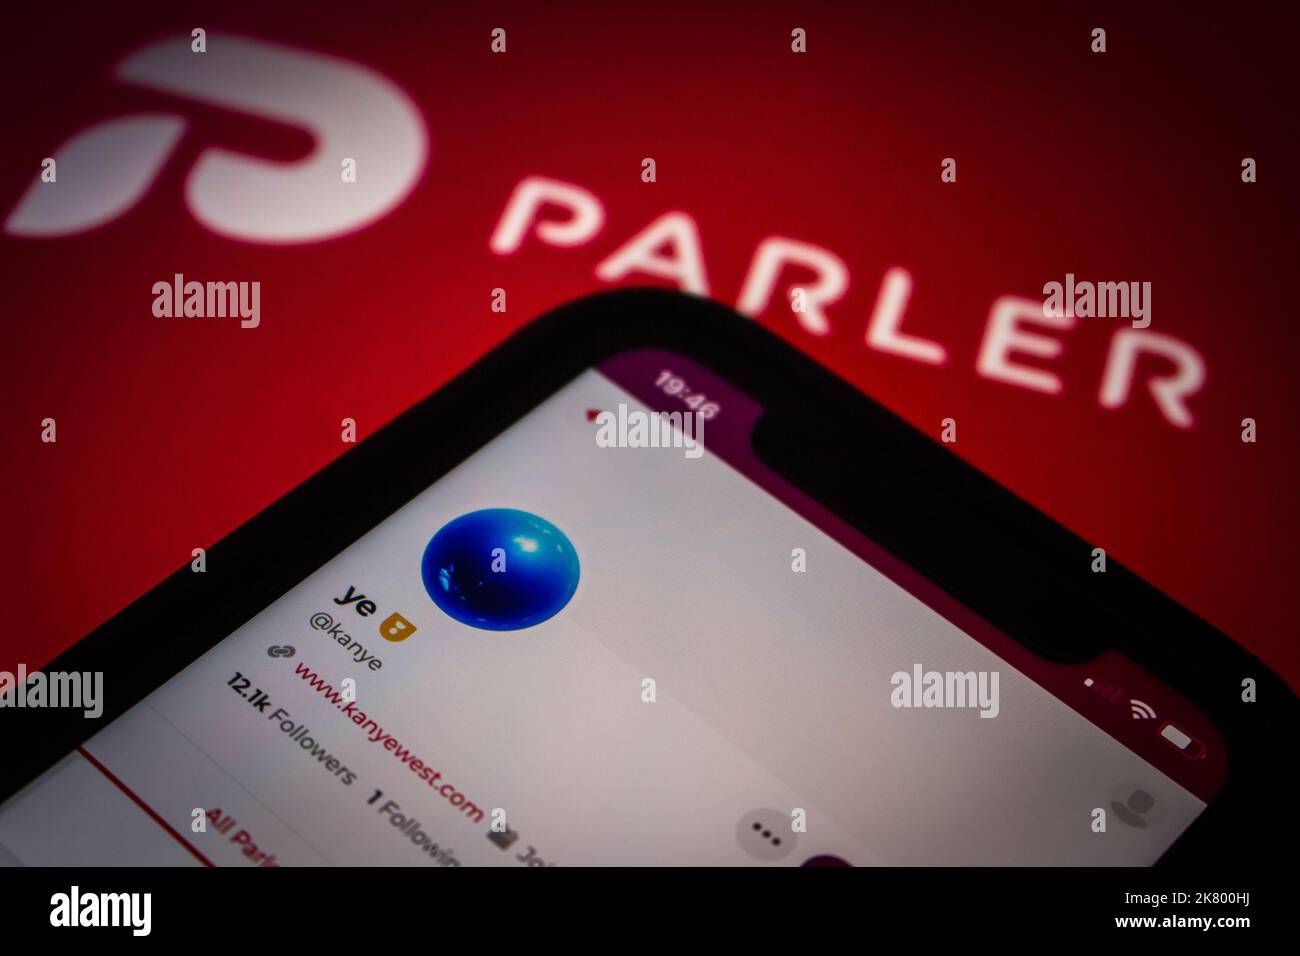 Parler-Account von Ye (früher bekannt als Kanye West) auf einem iPhone auf Parler-Logo-Hintergrund in dunkler Stimmung. Parler gab bekannt, dass ihr den Parler erworben habt Stockfoto